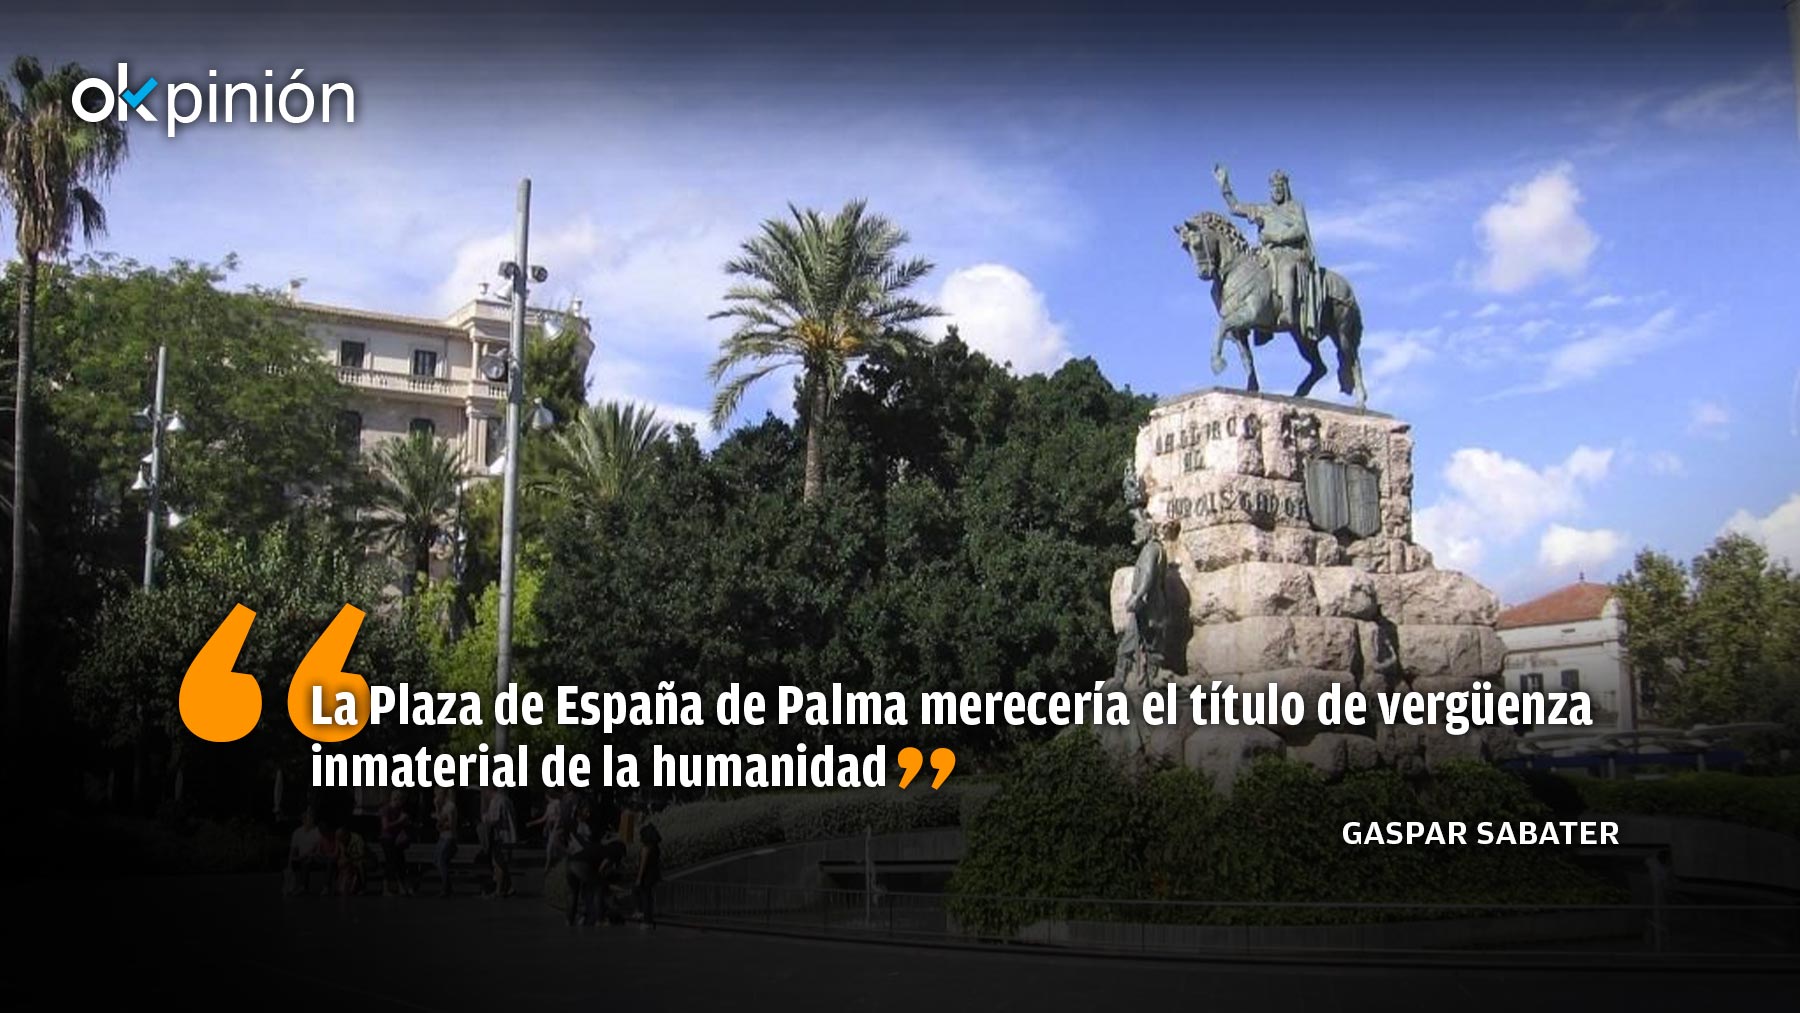 La Plaza de España vulgo Yamaa el Fna